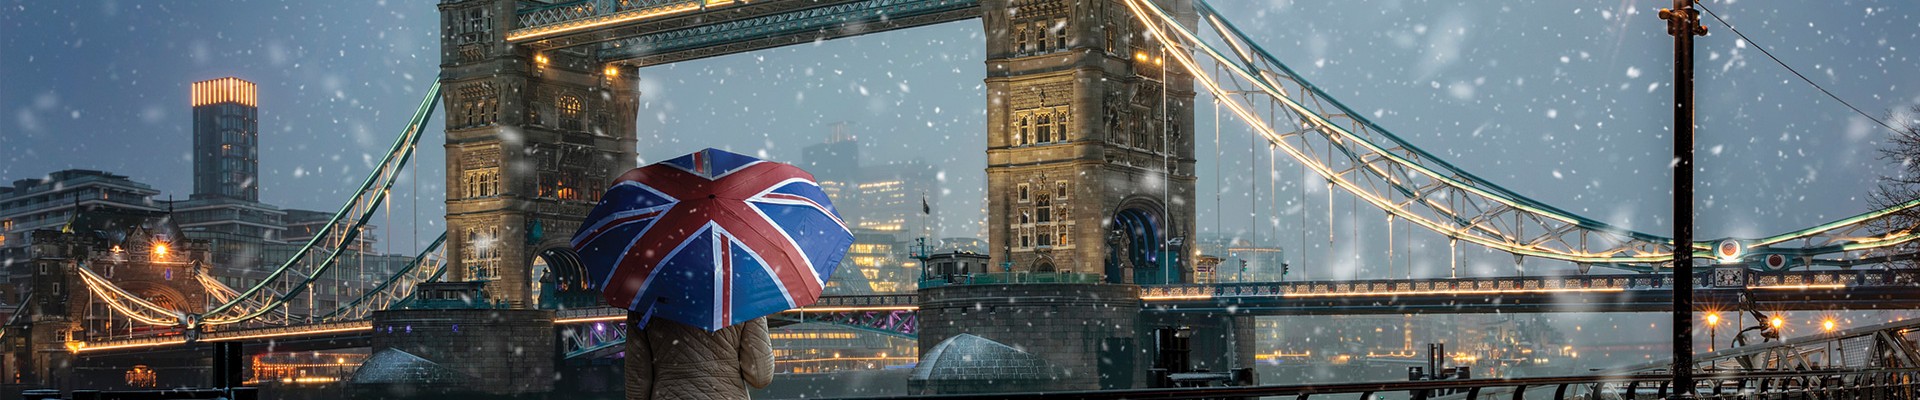 Winter Wonderland Experience - London Package (5 nights)